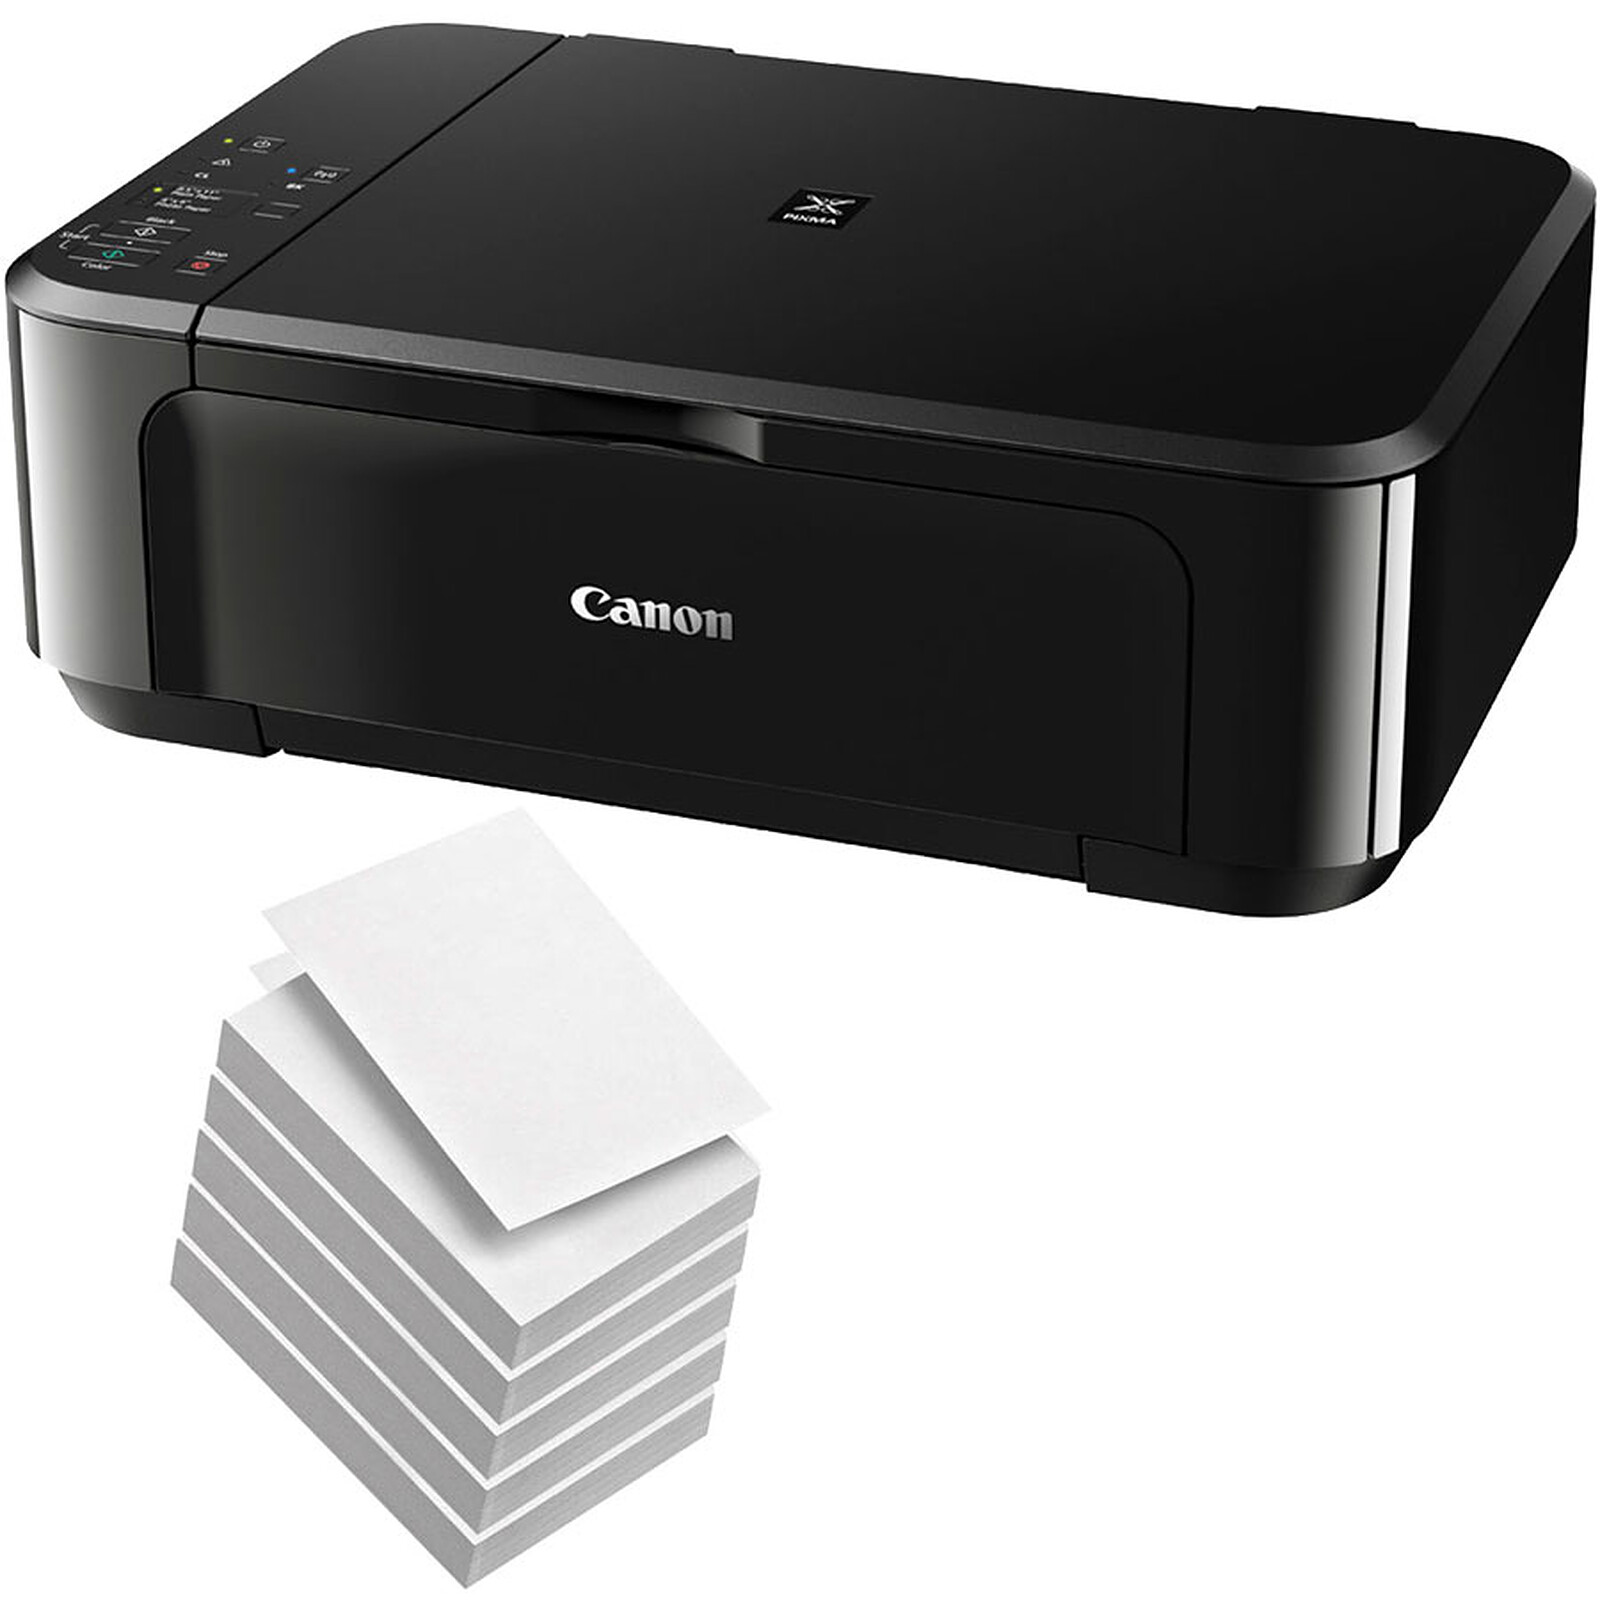 Canon PIXMA TS7450a Noir + PG-560/CL-561 Multipack - Imprimante  multifonction - Garantie 3 ans LDLC